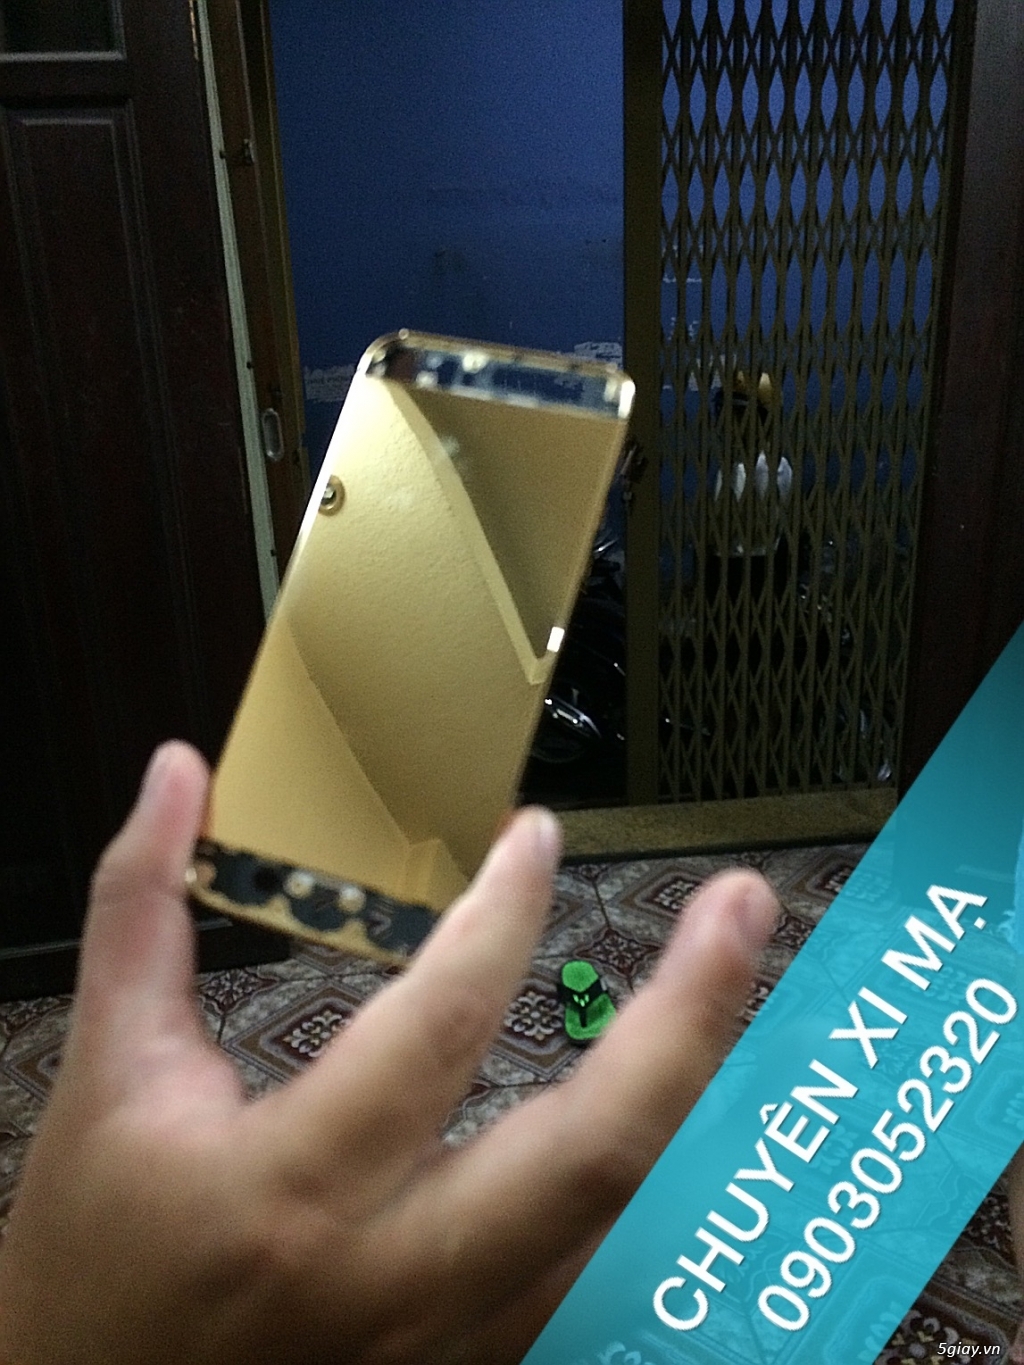 Chuyên mạ crom-mạ vàng 24k vỏ Iphone-5 chất lượng giá rẽ - 4